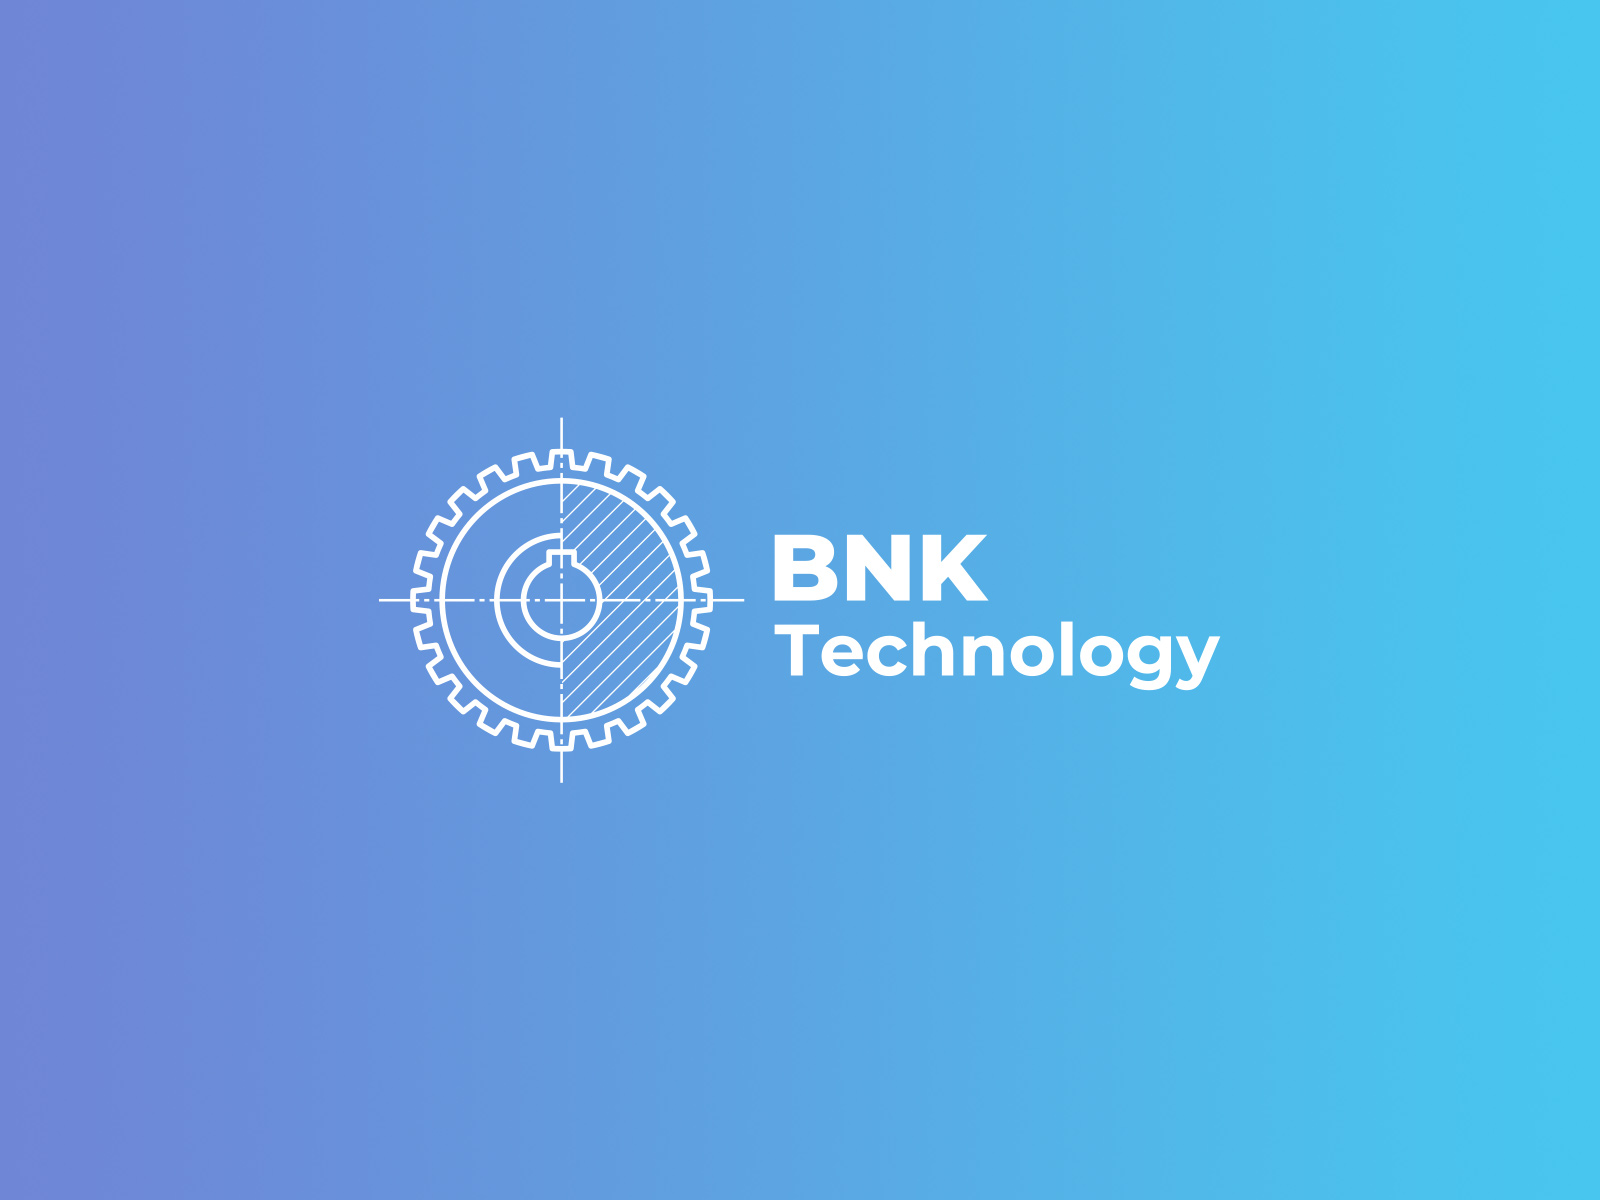 Логотип современного предприятия обработки металлов BNK Technology